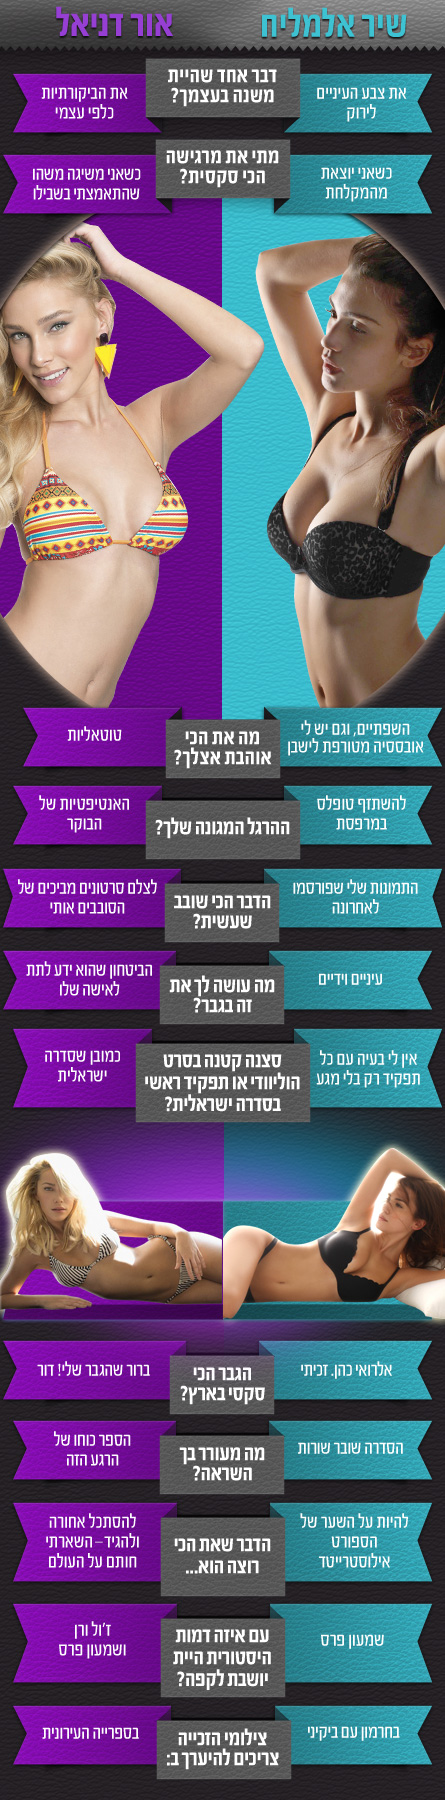 הישראלית הסקסית 2013 - הגמר הגדול